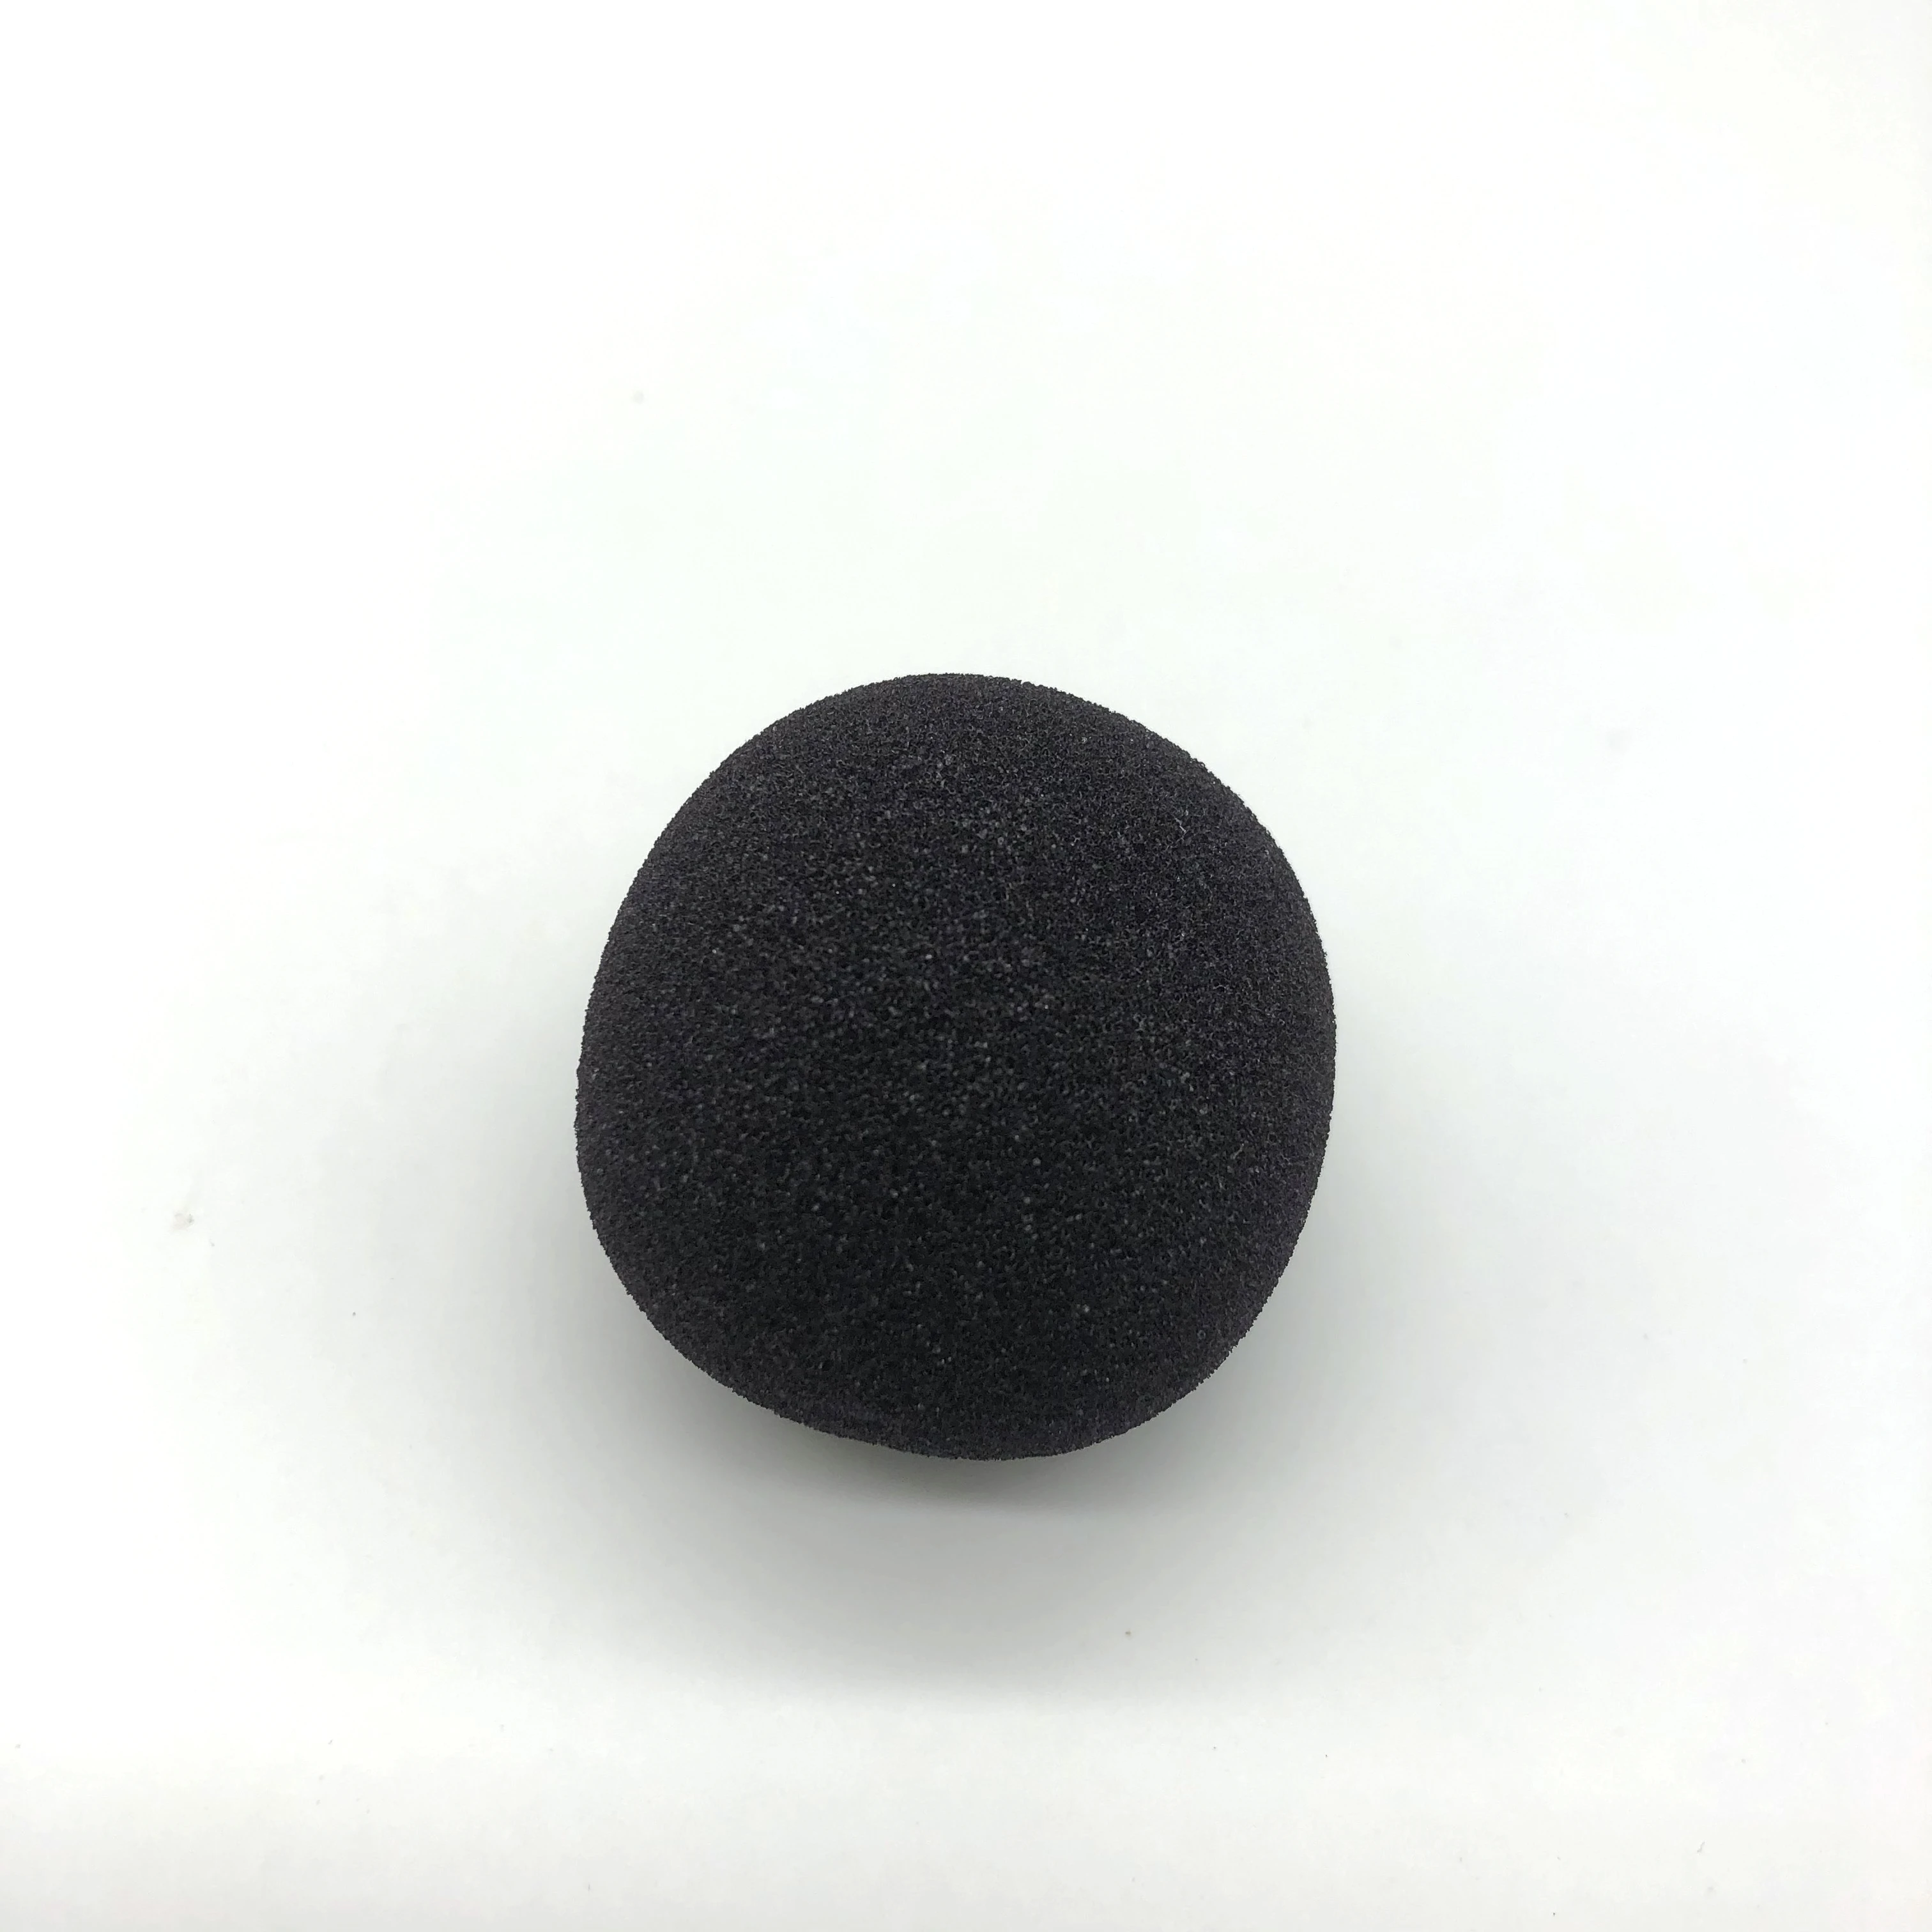 Multi-color custom logo stress ball sponge foam ball material